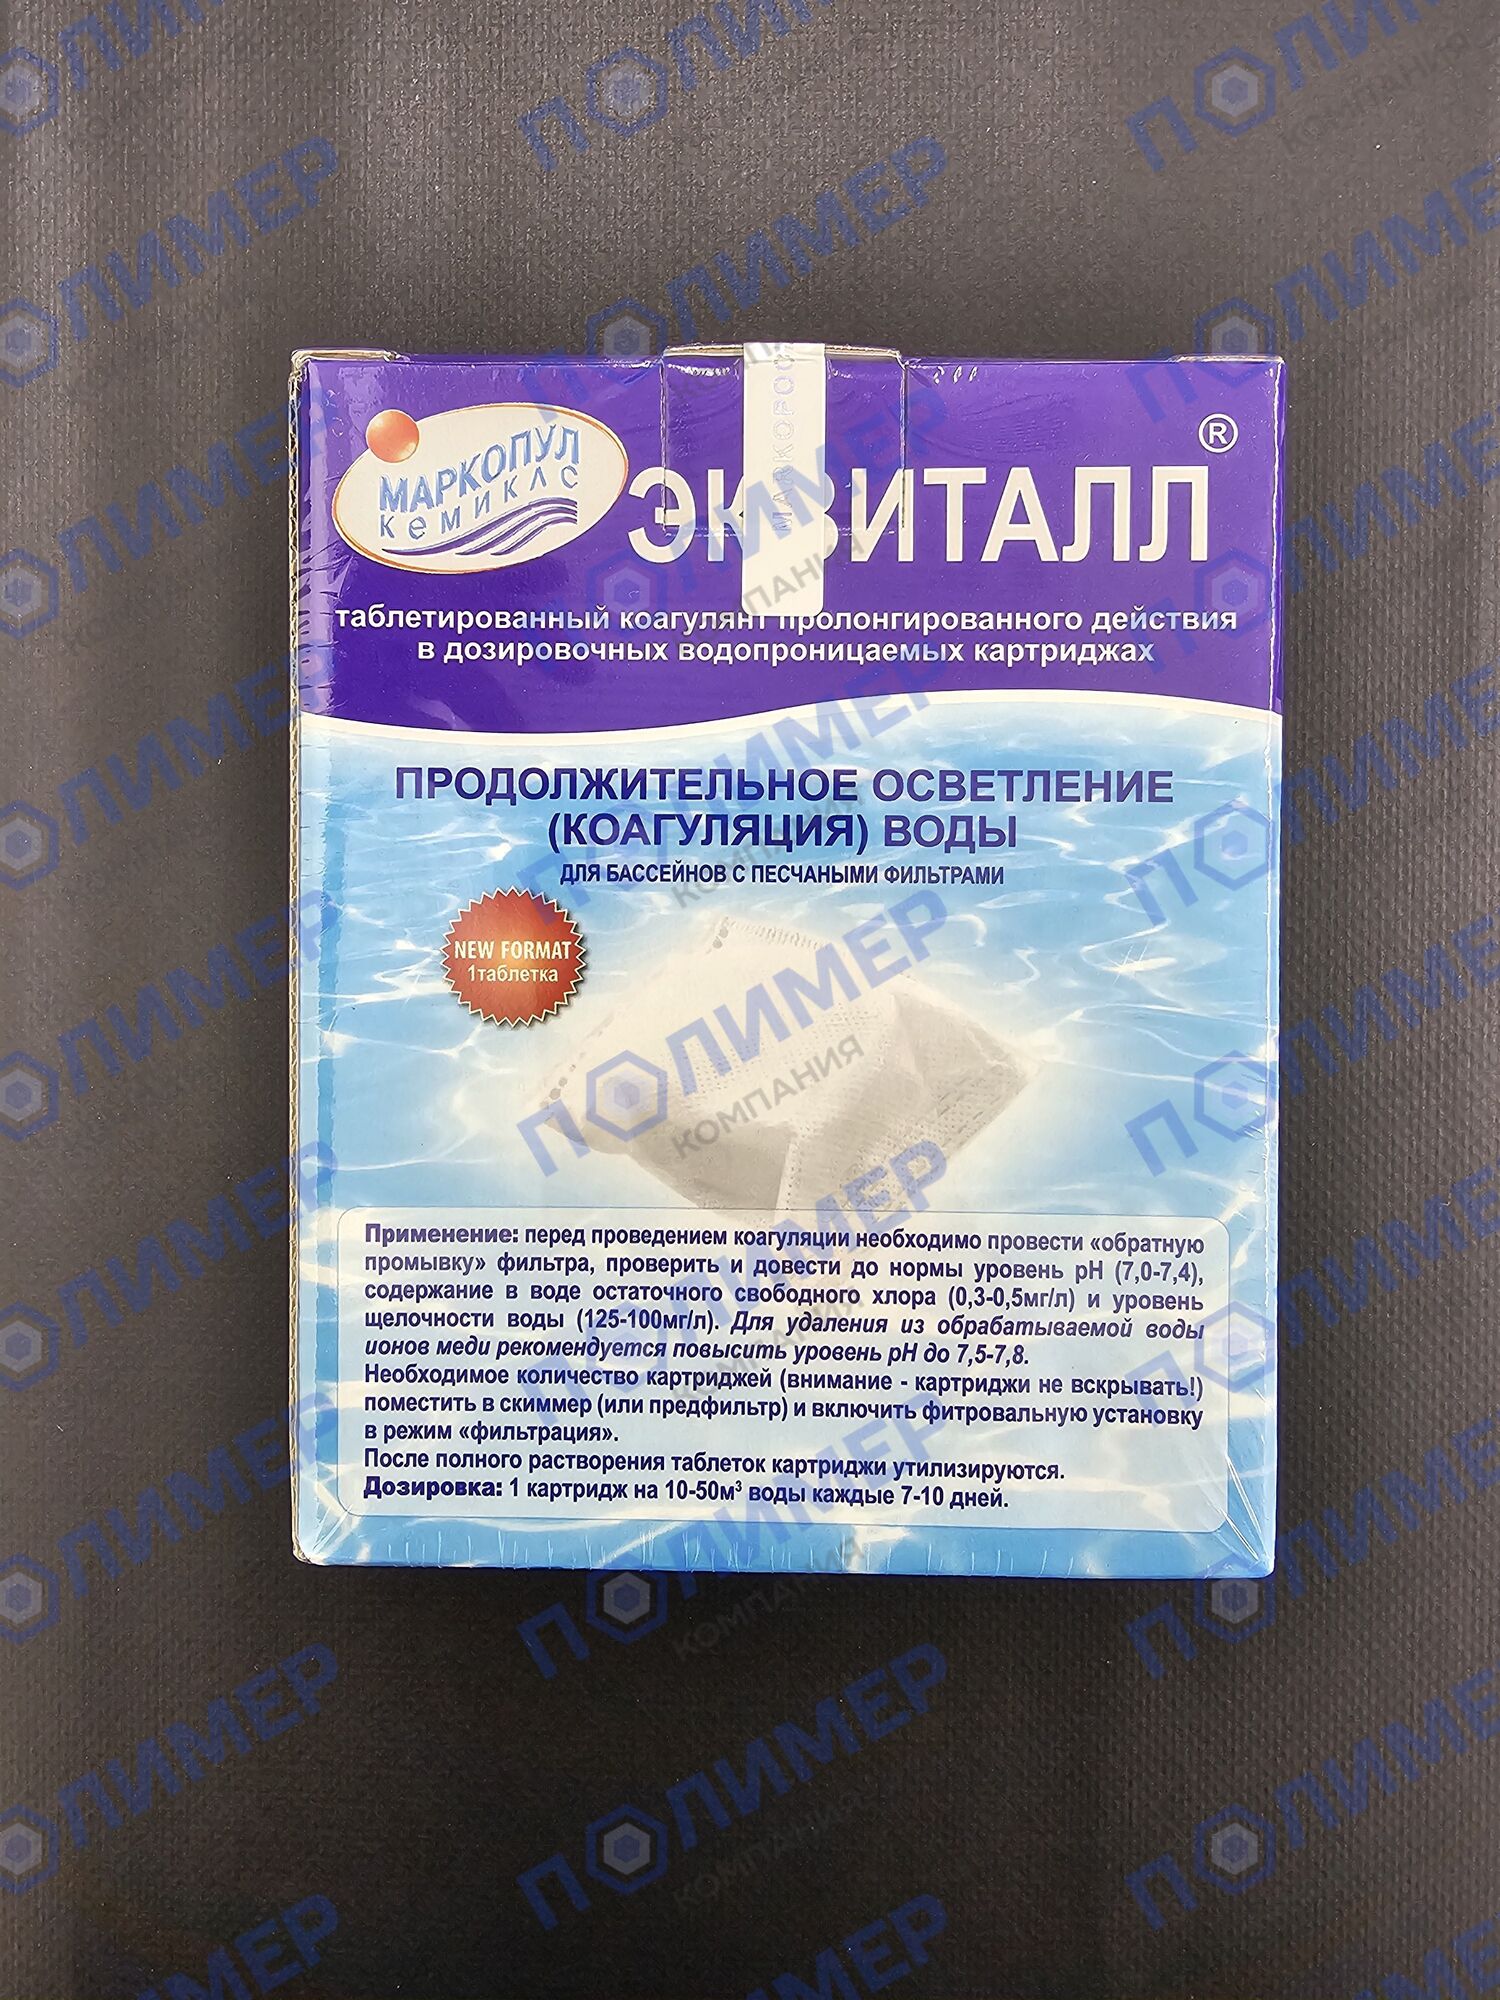 ЭКВИТАЛЛ (продолжительное осветление (коагуляция) воды) 1 кг-8 таблеток